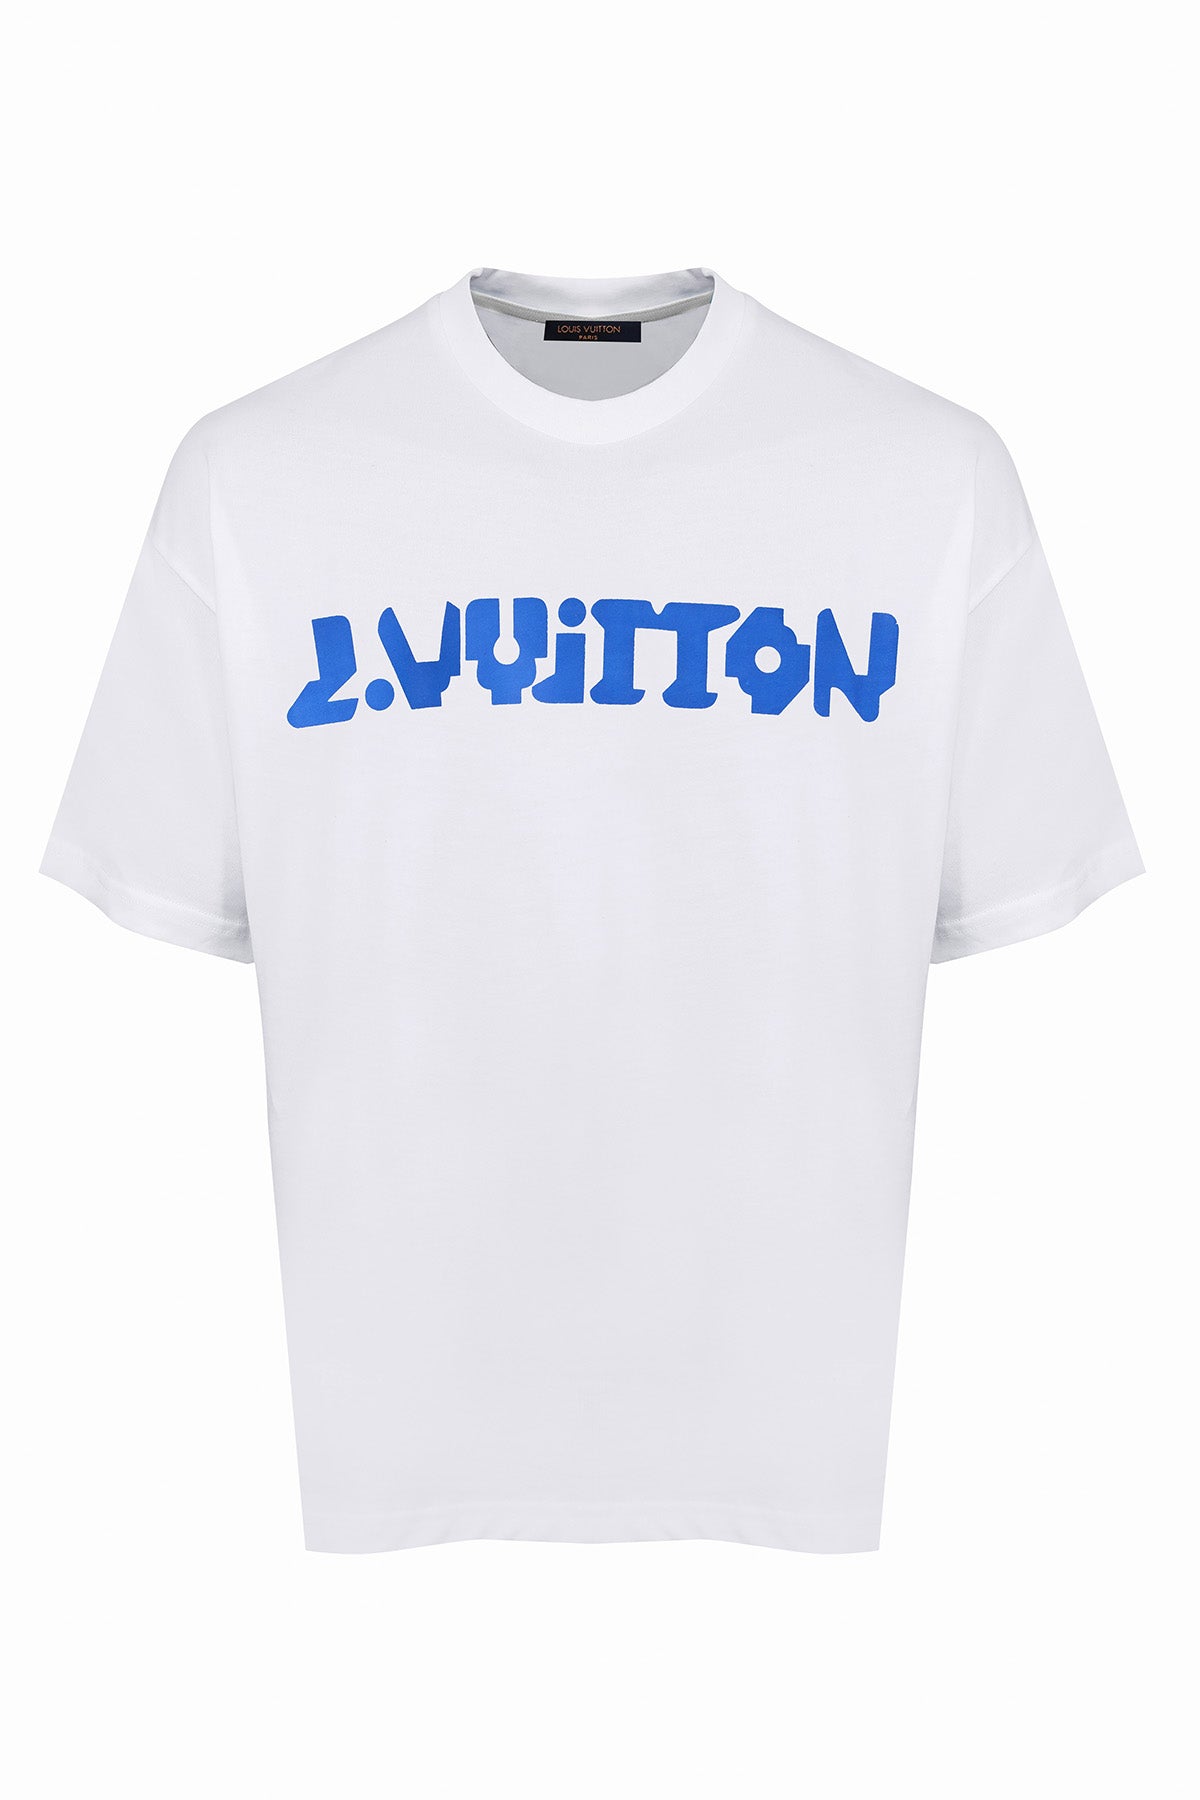 Luis Vuitton 2018 Point neuf teeshirt (white)